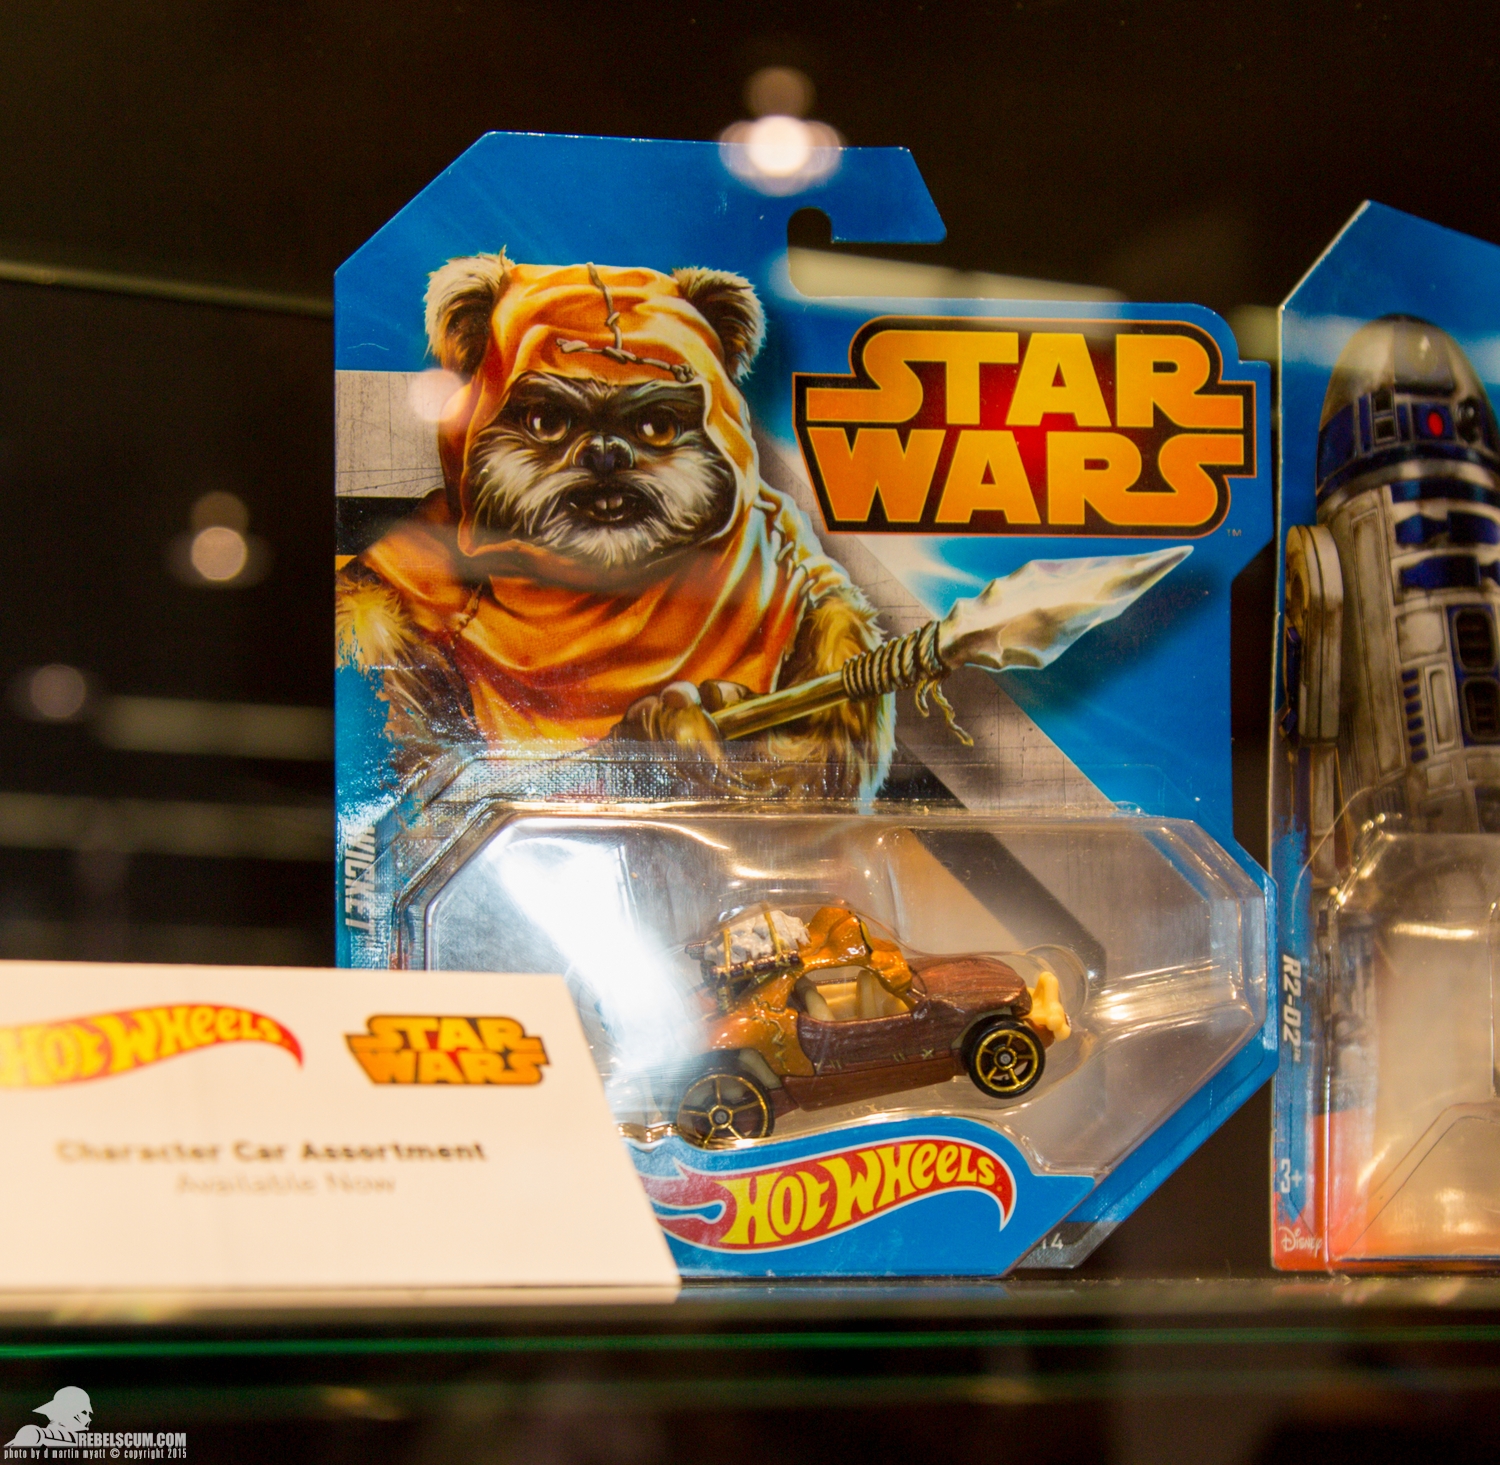 Star-Wars-Celebration-Anaheim-2015-Mattel-Hot-Wheels-006.jpg